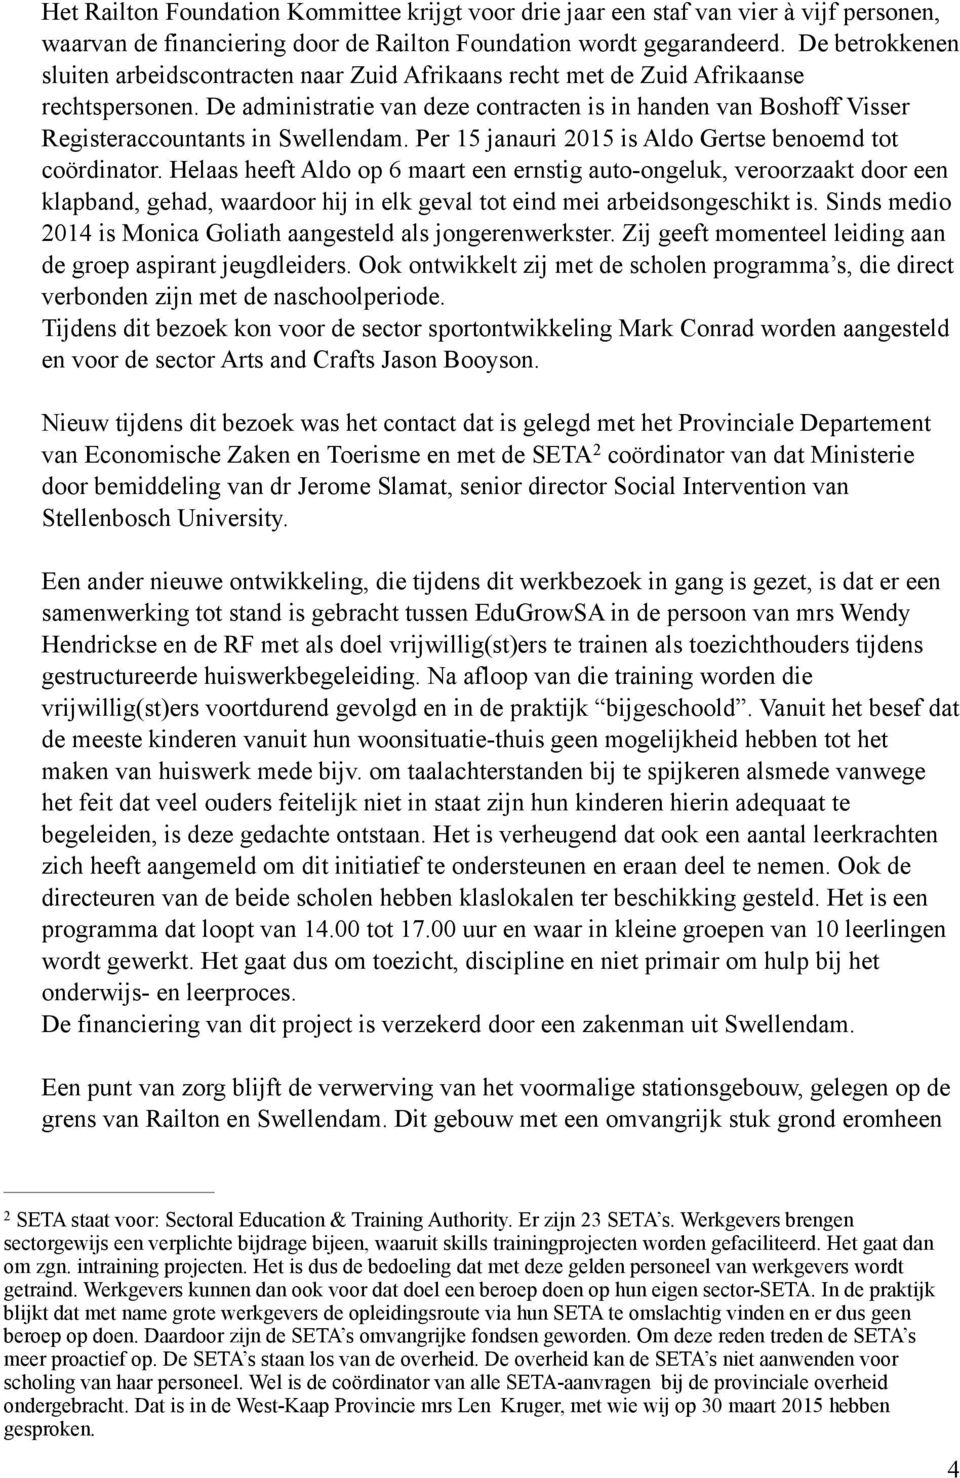 De administratie van deze contracten is in handen van Boshoff Visser Registeraccountants in Swellendam. Per 15 janauri 2015 is Aldo Gertse benoemd tot coördinator.